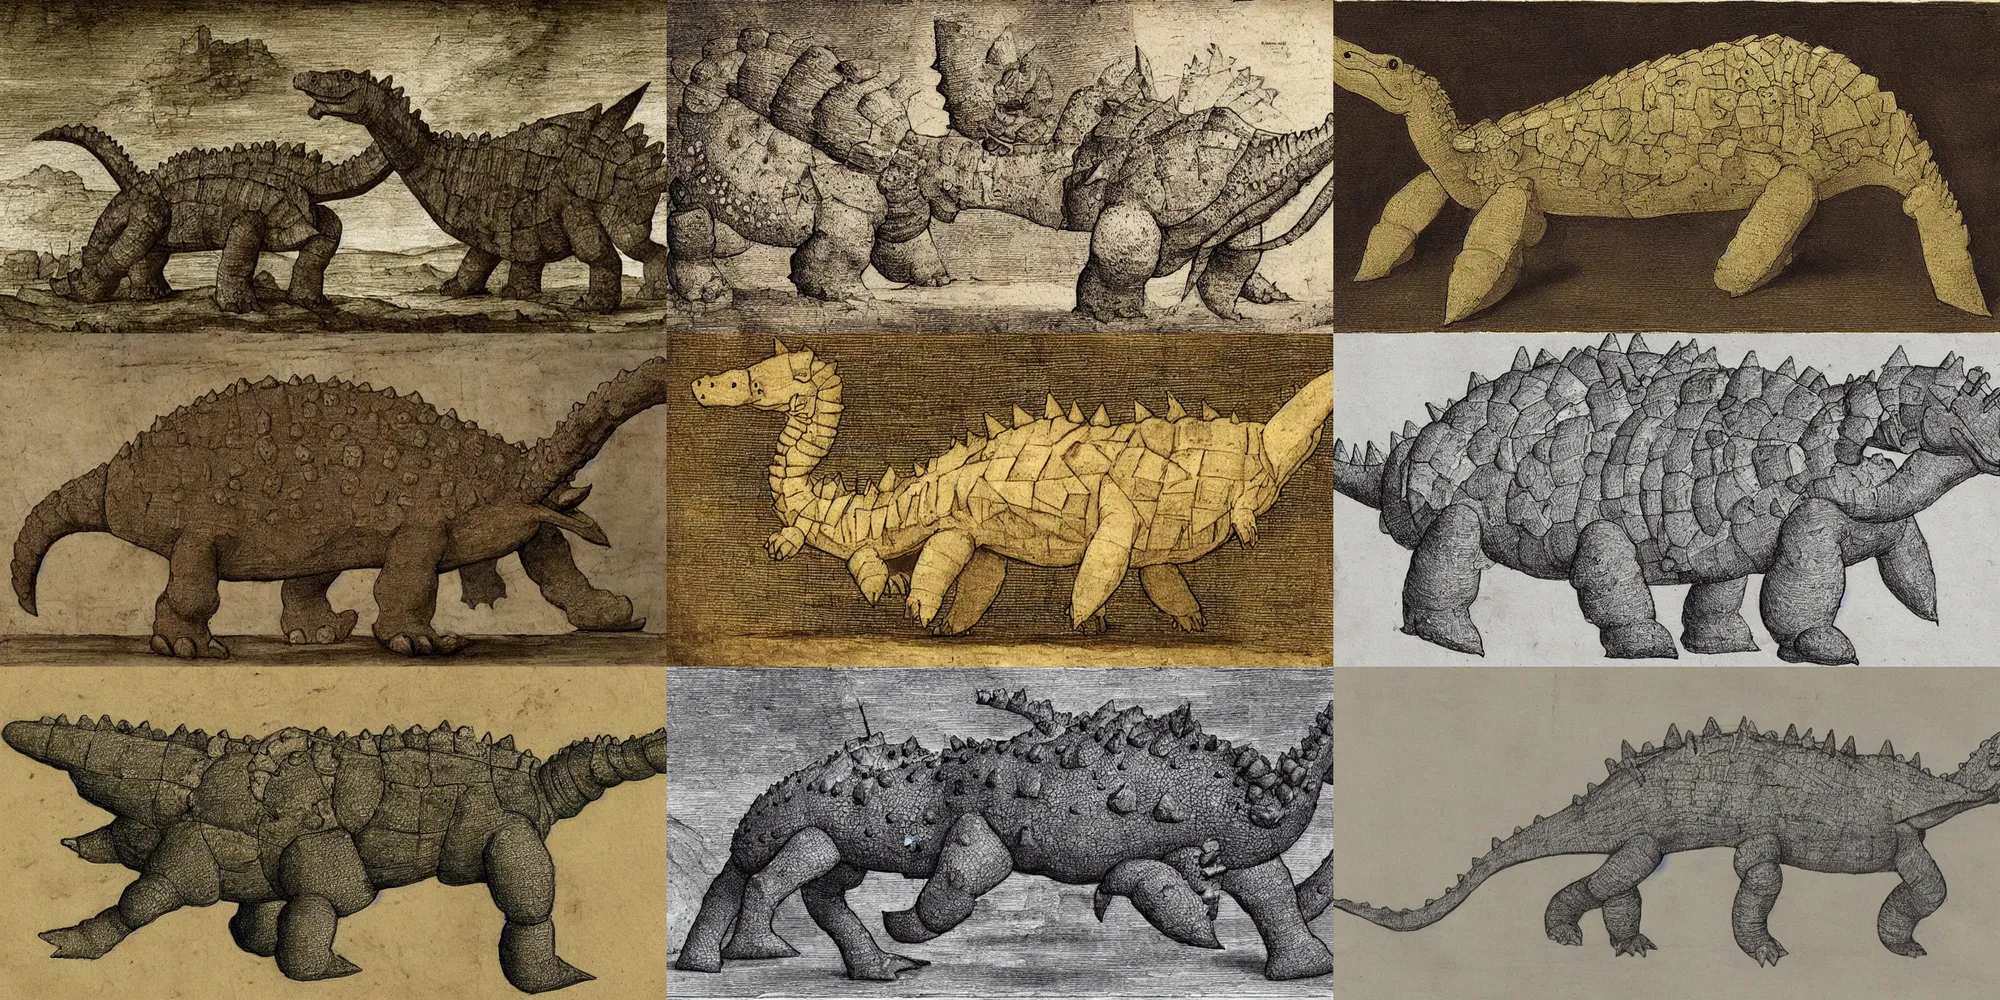 Prompt: Ecce Stegosaur, drawn by Leonardo da Vinci